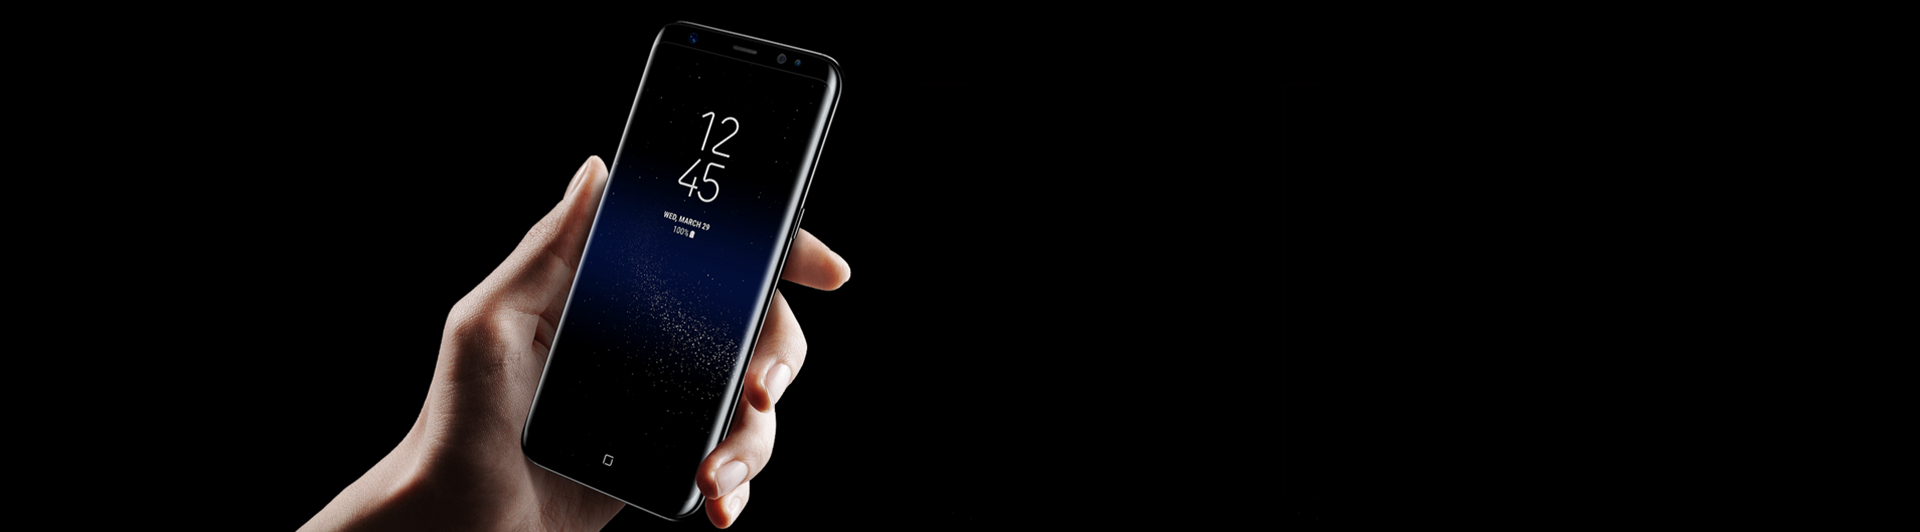 Điện thoại Samsung Galaxy S8 plus đen thiết kế siêu mỏng